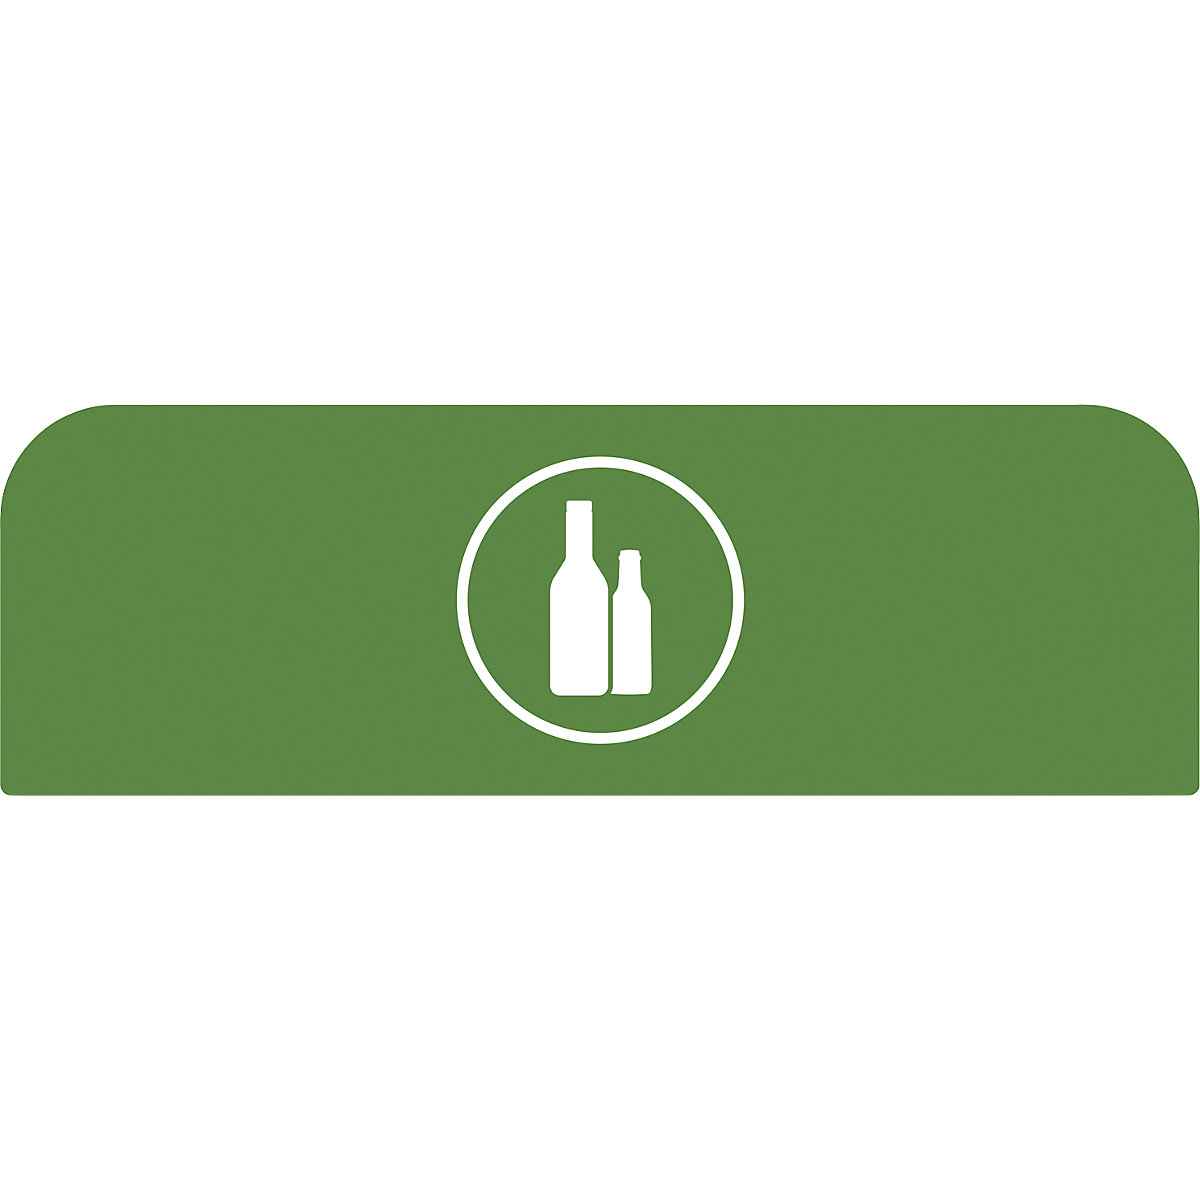 Hinweistafel Configure™ Rubbermaid, für 87-l-Behälter, grün